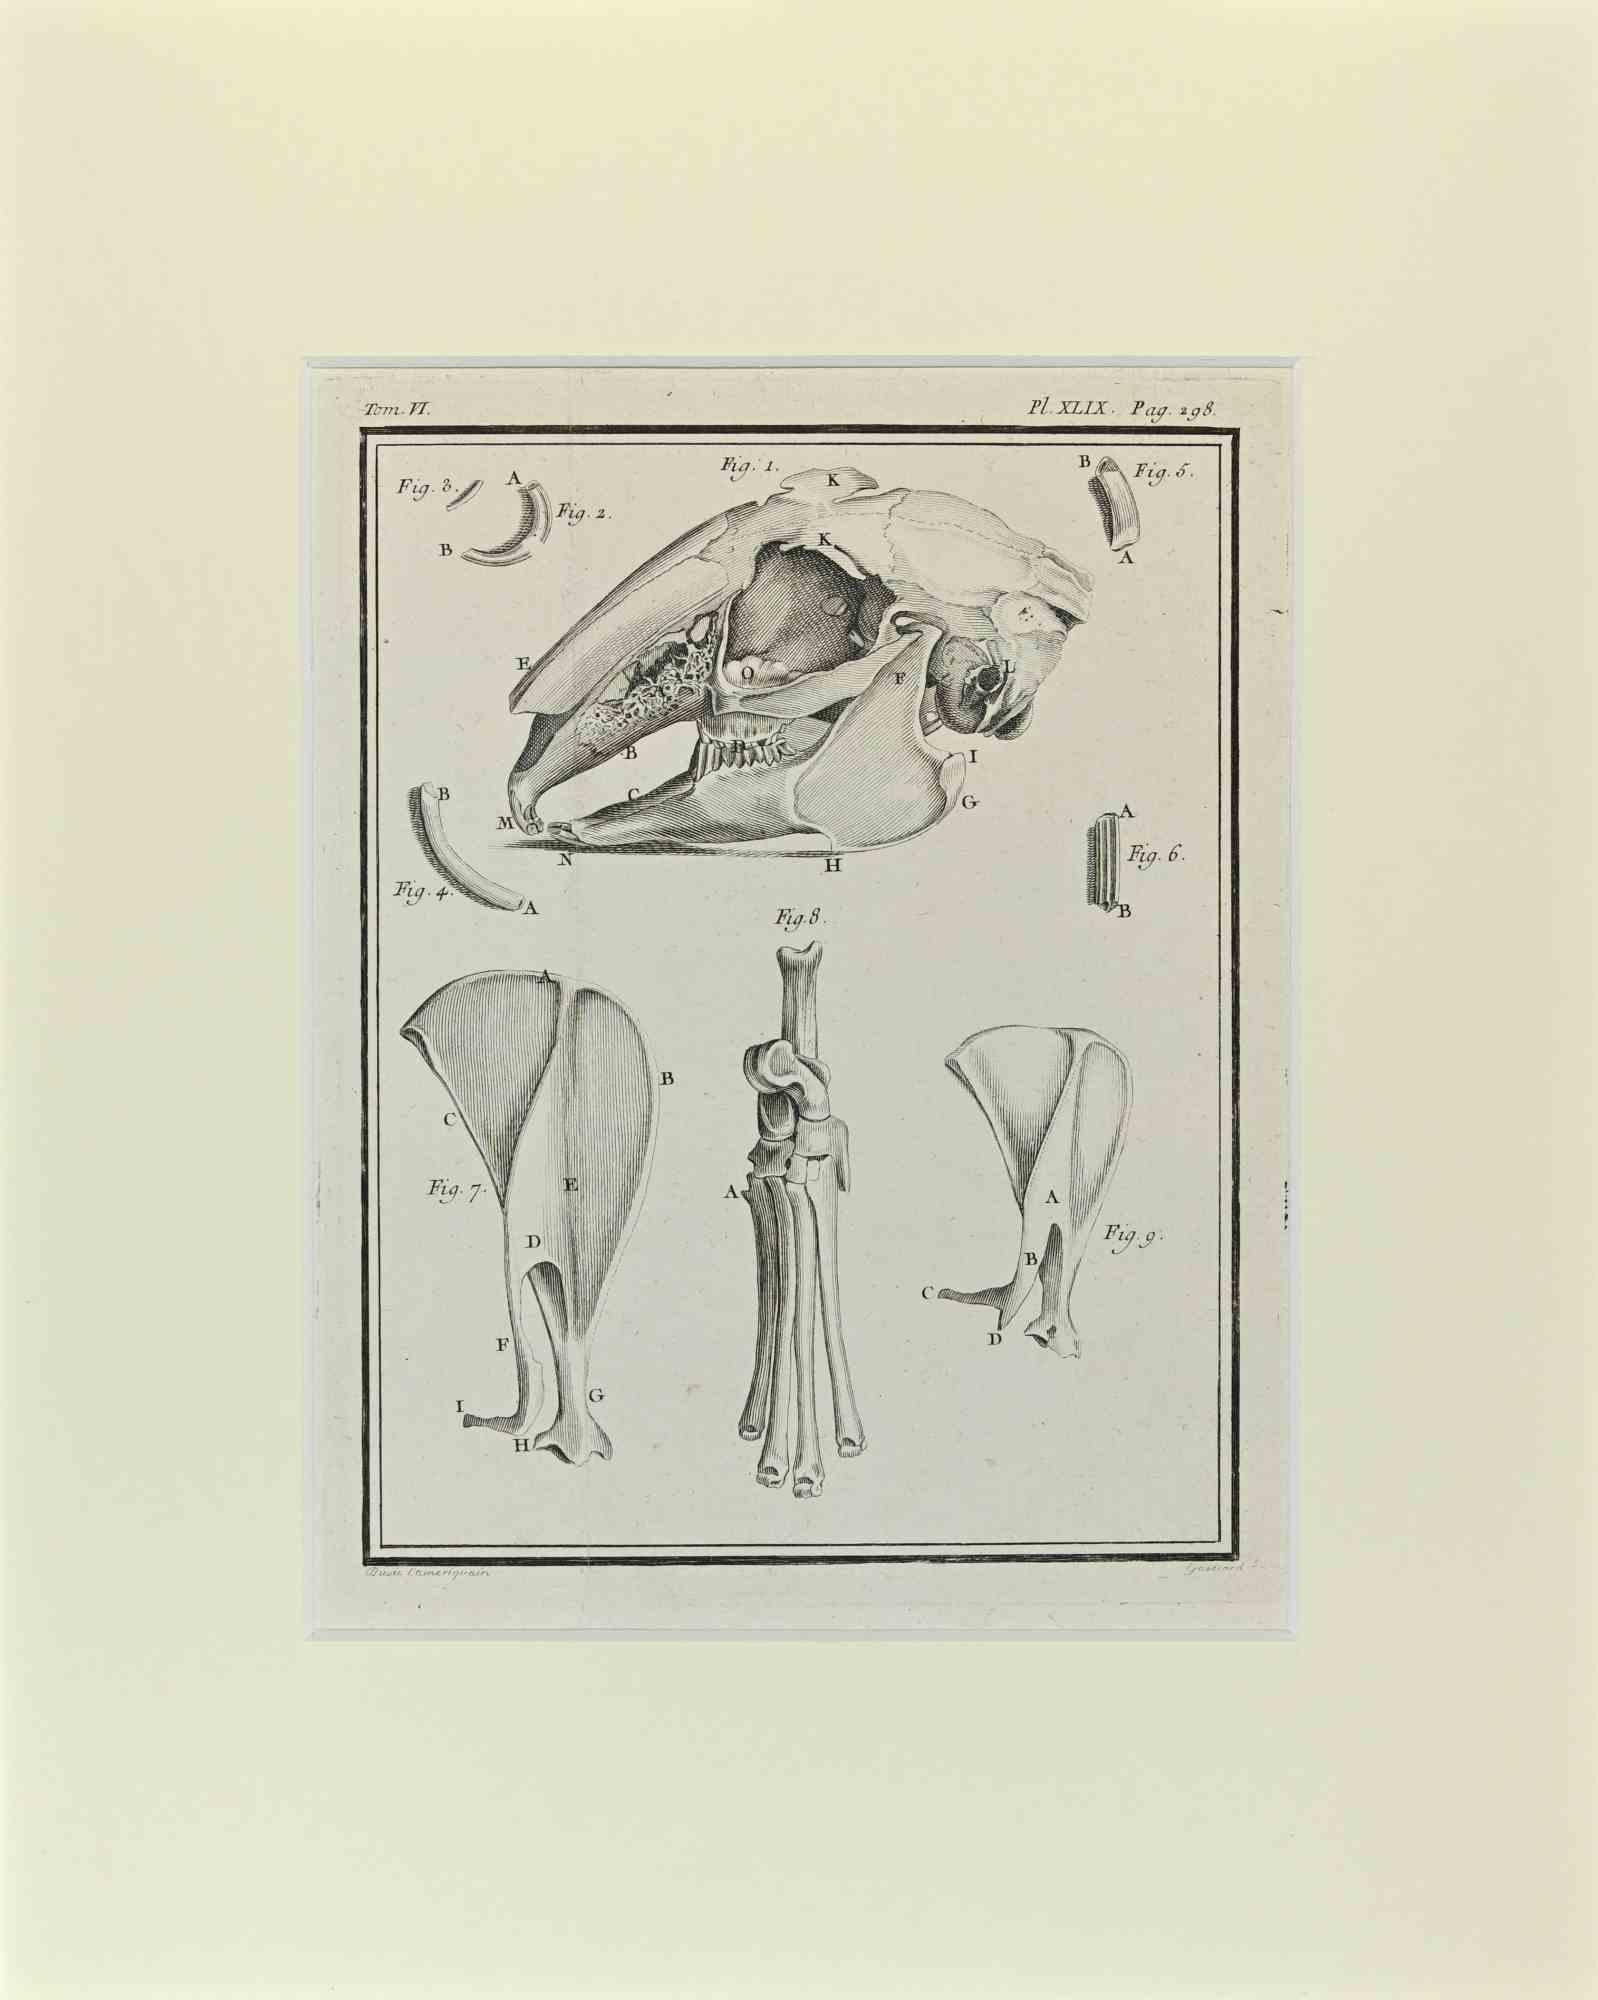 Das Kaninchenskelett ist ein Kunstwerk von Buvée l'Américain aus dem Jahr 1771.  

Radierung B./W. Druck auf Elfenbeinpapier. Signiert auf der Platte am unteren linken Rand.

Das Werk ist auf Karton geklebt. Abmessungen insgesamt: 35x28 cm.

Das